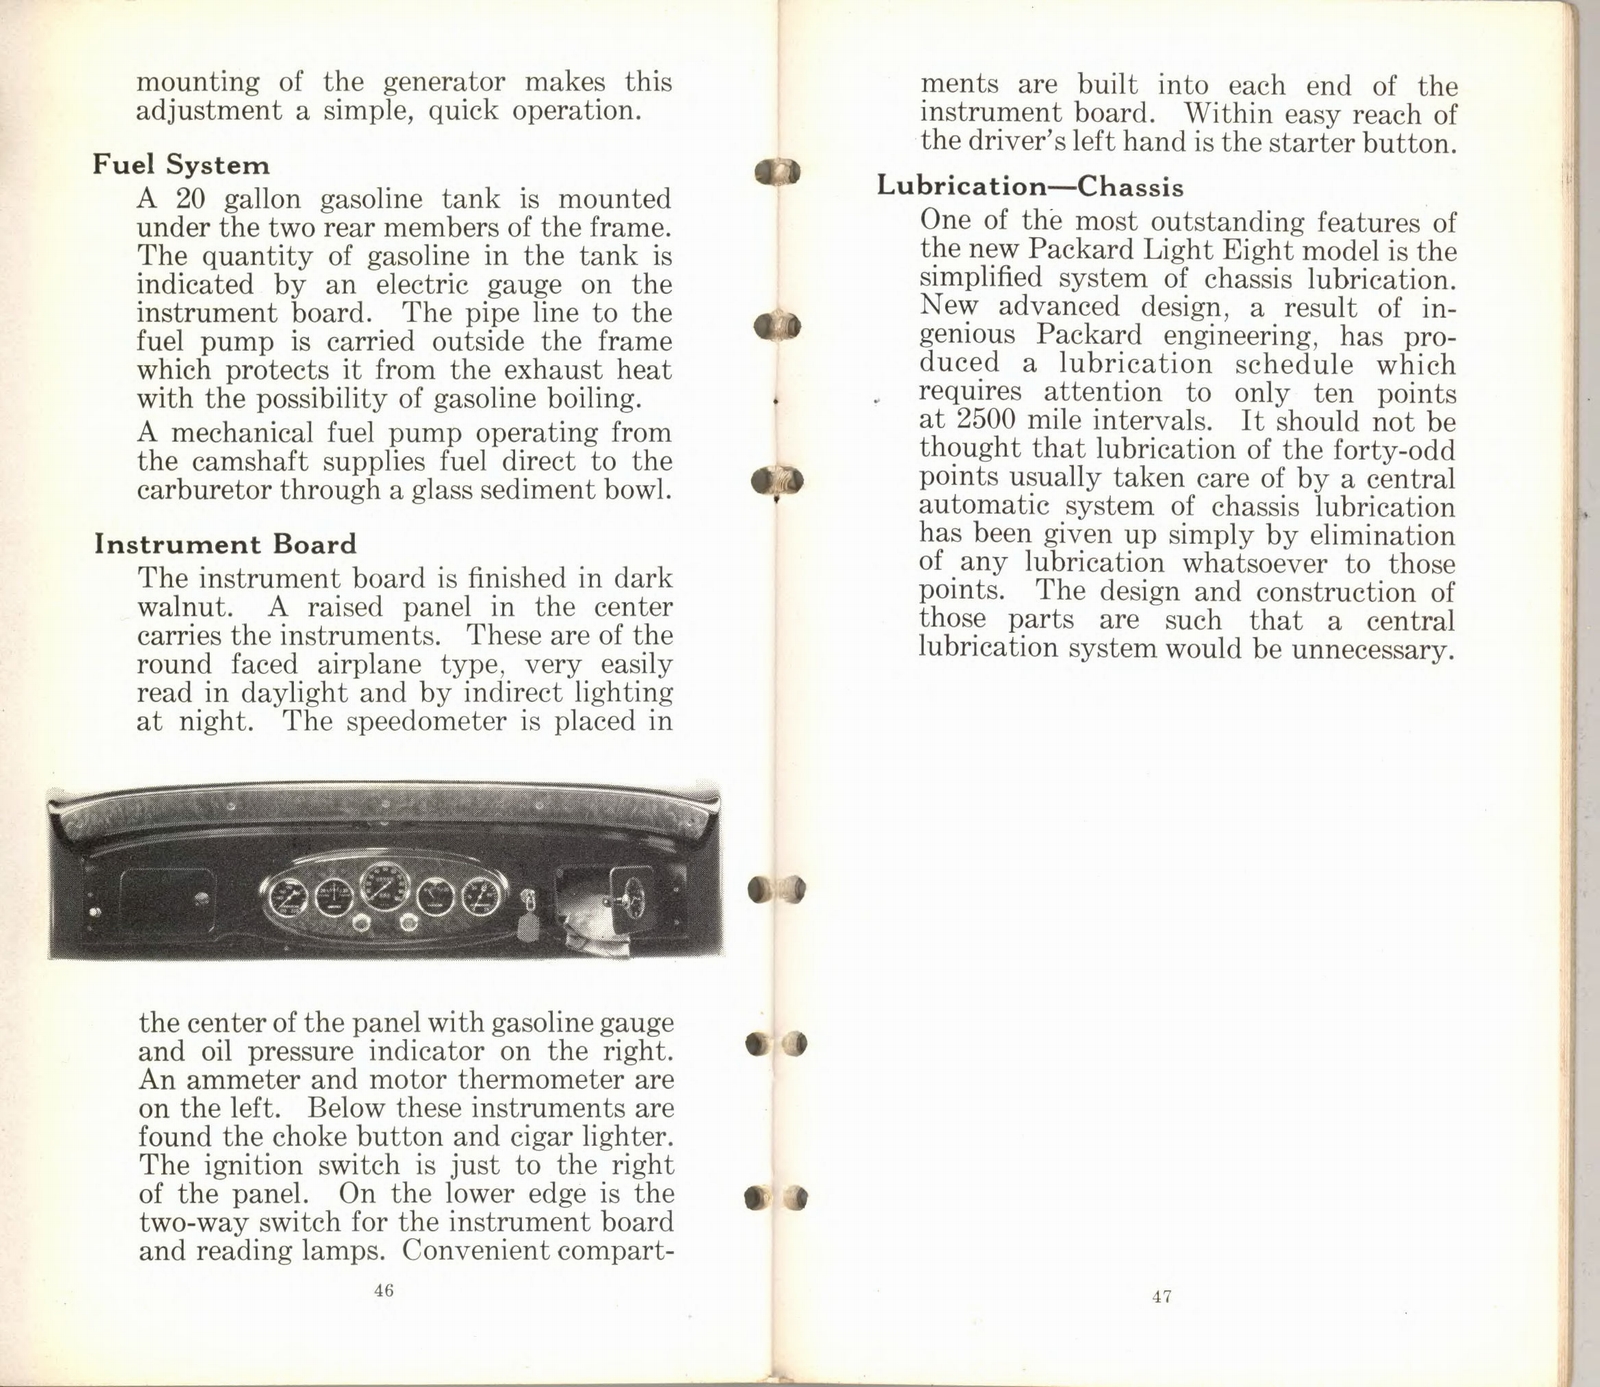 n_1932 Packard Light Eight Facts Book-46-47.jpg